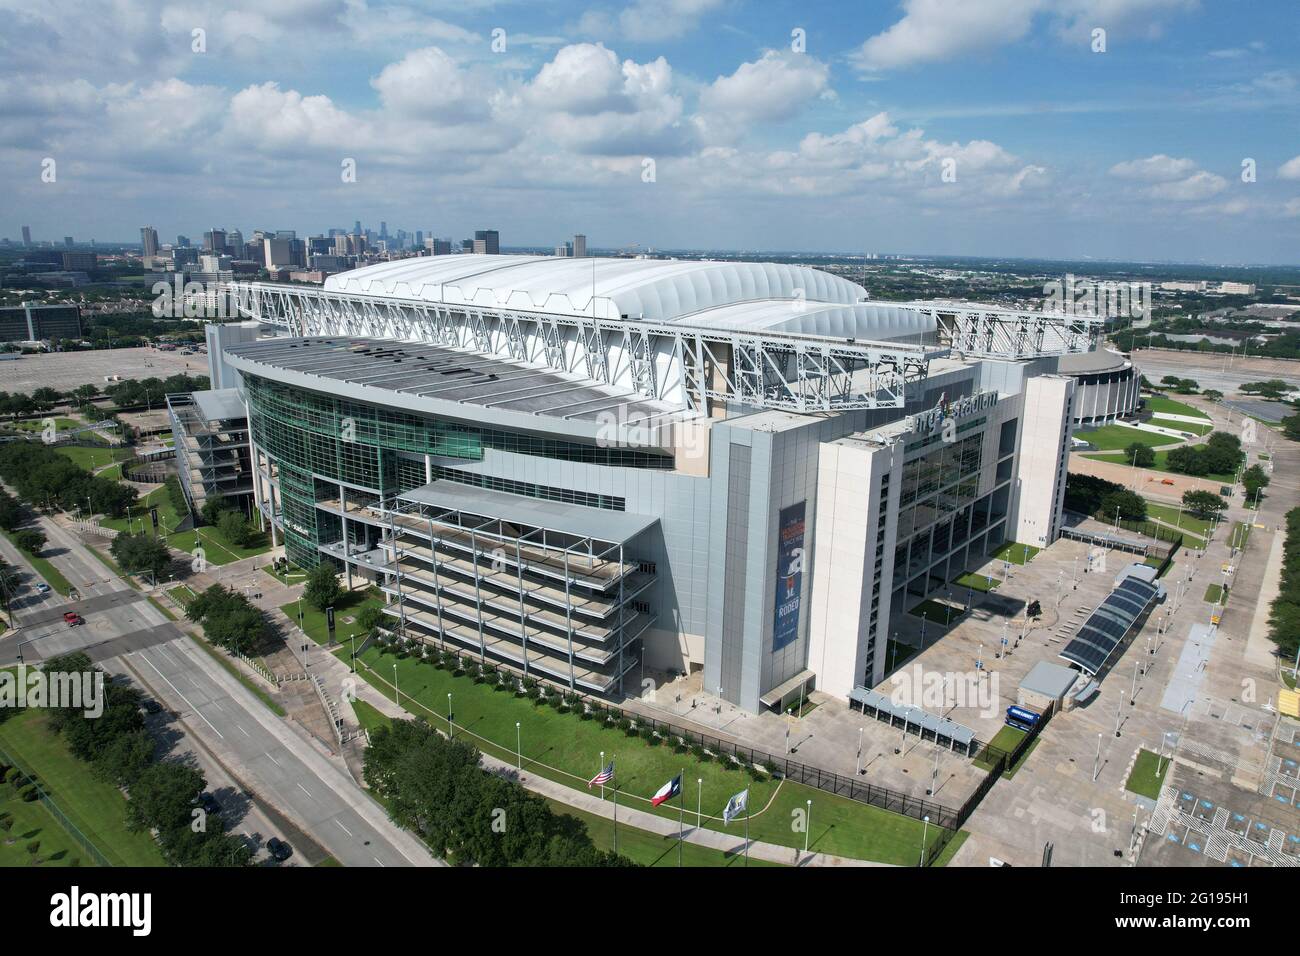 Eine Luftaufnahme des NRG Stadions, Sonntag, 30. Mai 2021, in Houston. Das einziehende Dachstadion ist die Heimat der Houston Texans. Stockfoto